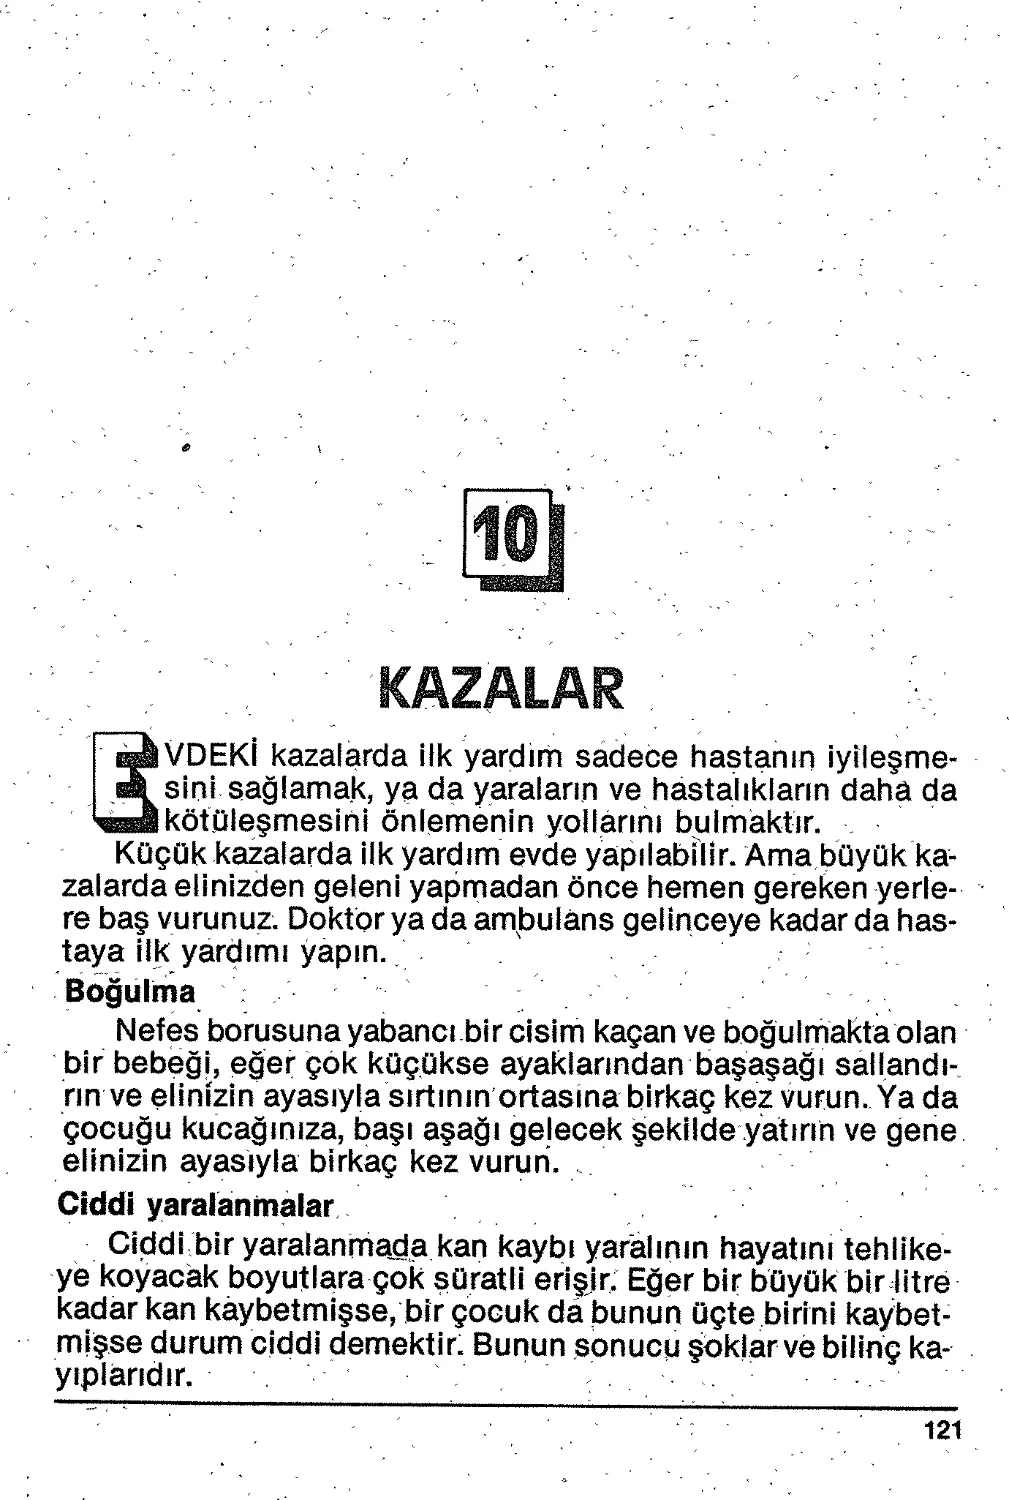 10. Kazalar